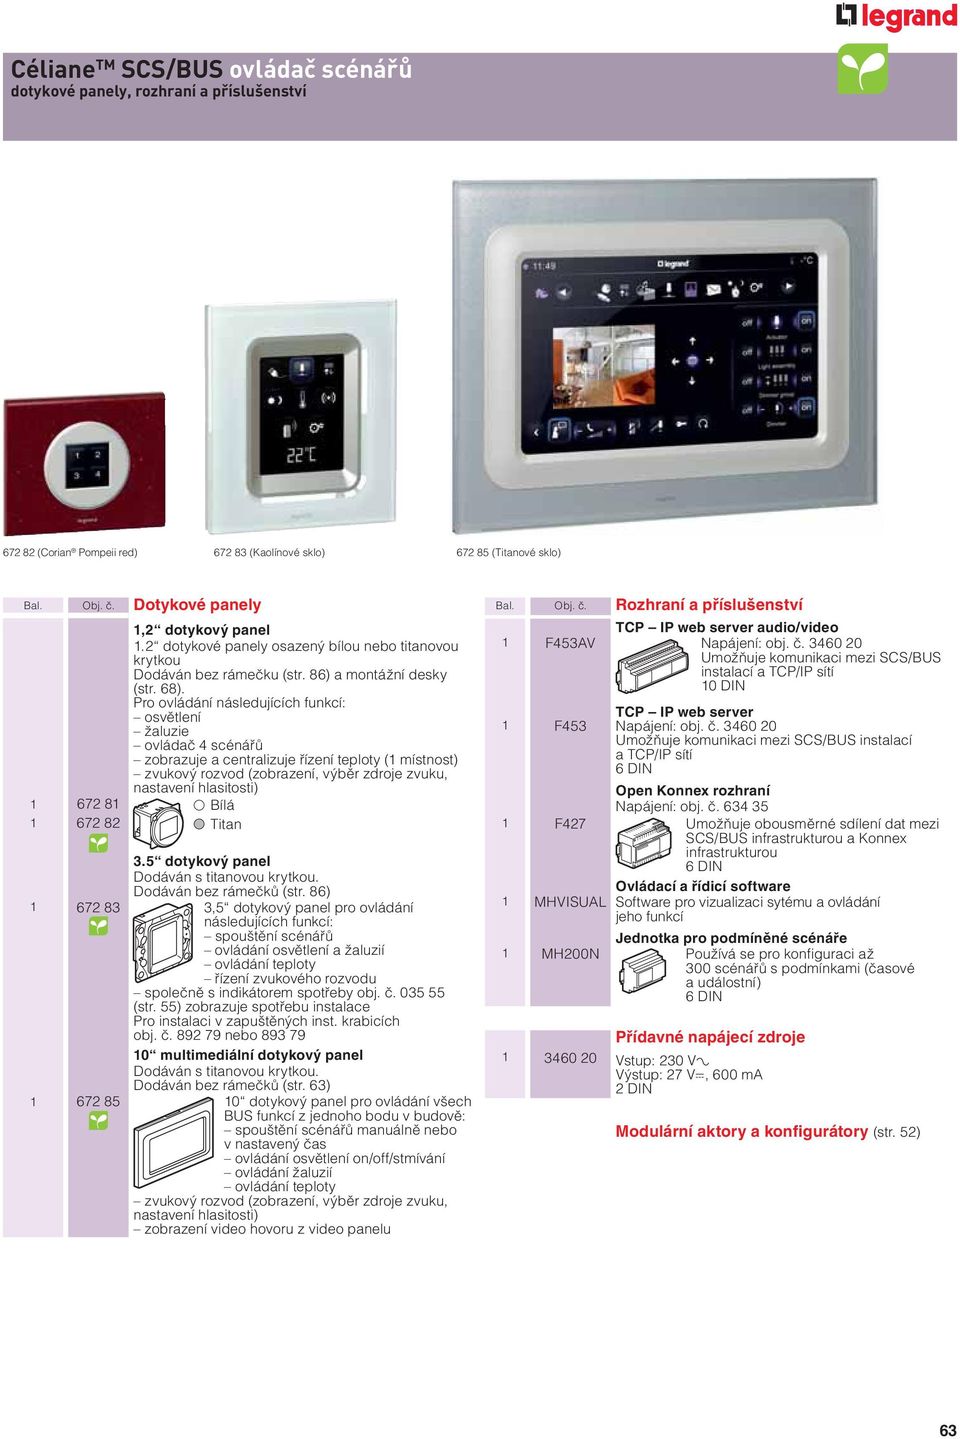 Pro ovládání následujících funkcí: osvětlení žaluzie ovládač 4 scénářů zobrazuje a centralizuje řízení teploty ( místnost) zvukový rozvod (zobrazení, výběr zdroje zvuku, nastavení hlasitosti) 672 8